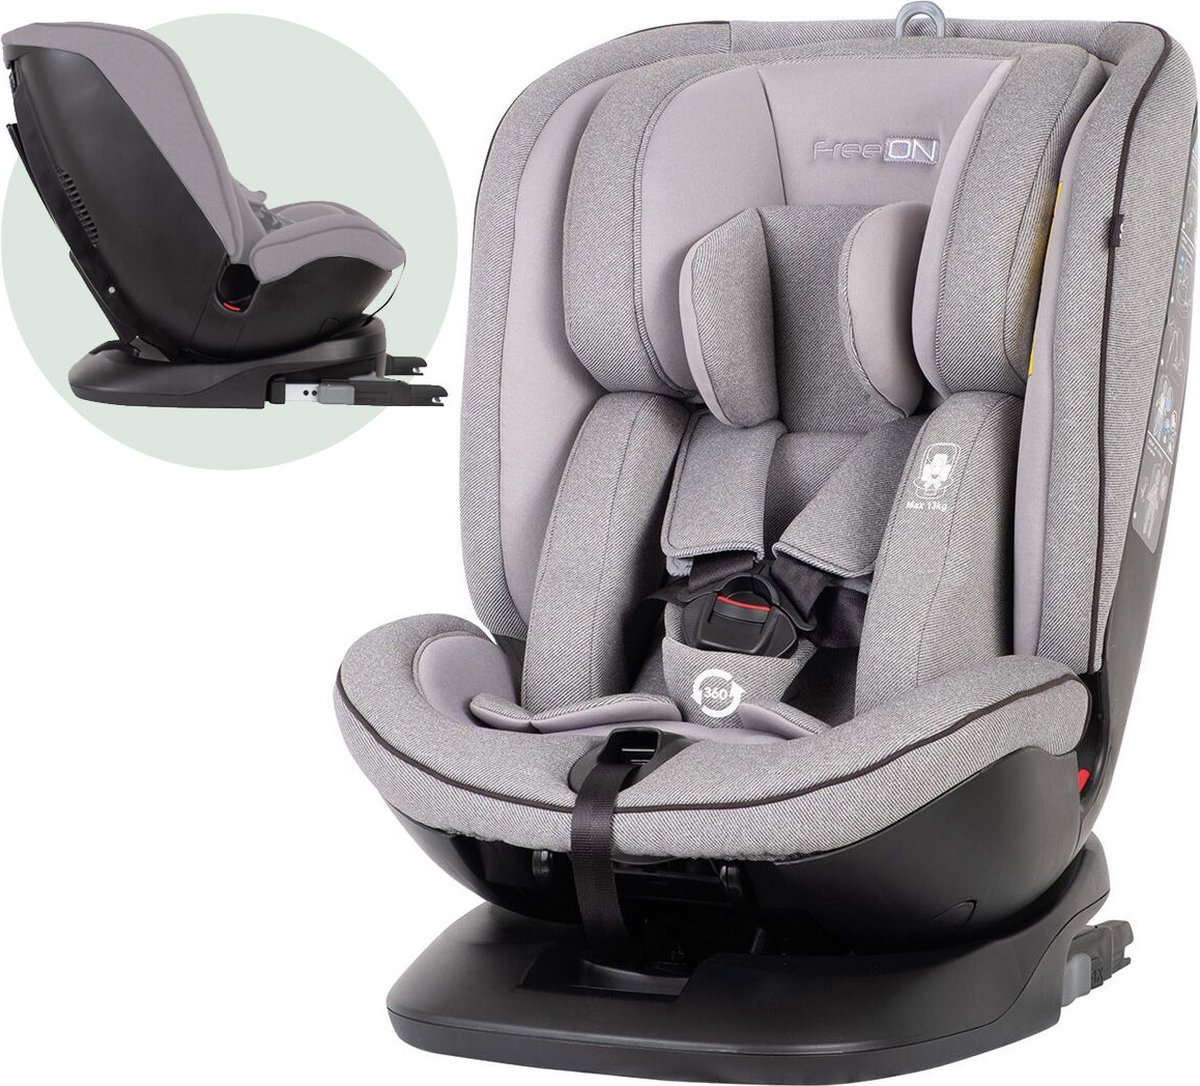 FreeON autostoel Atlas 360° met isoFix Lichtgrijs (0-36kg) - Groep 0-1-2-3 autostoel voor kinderen van 0 tot 12 jaar